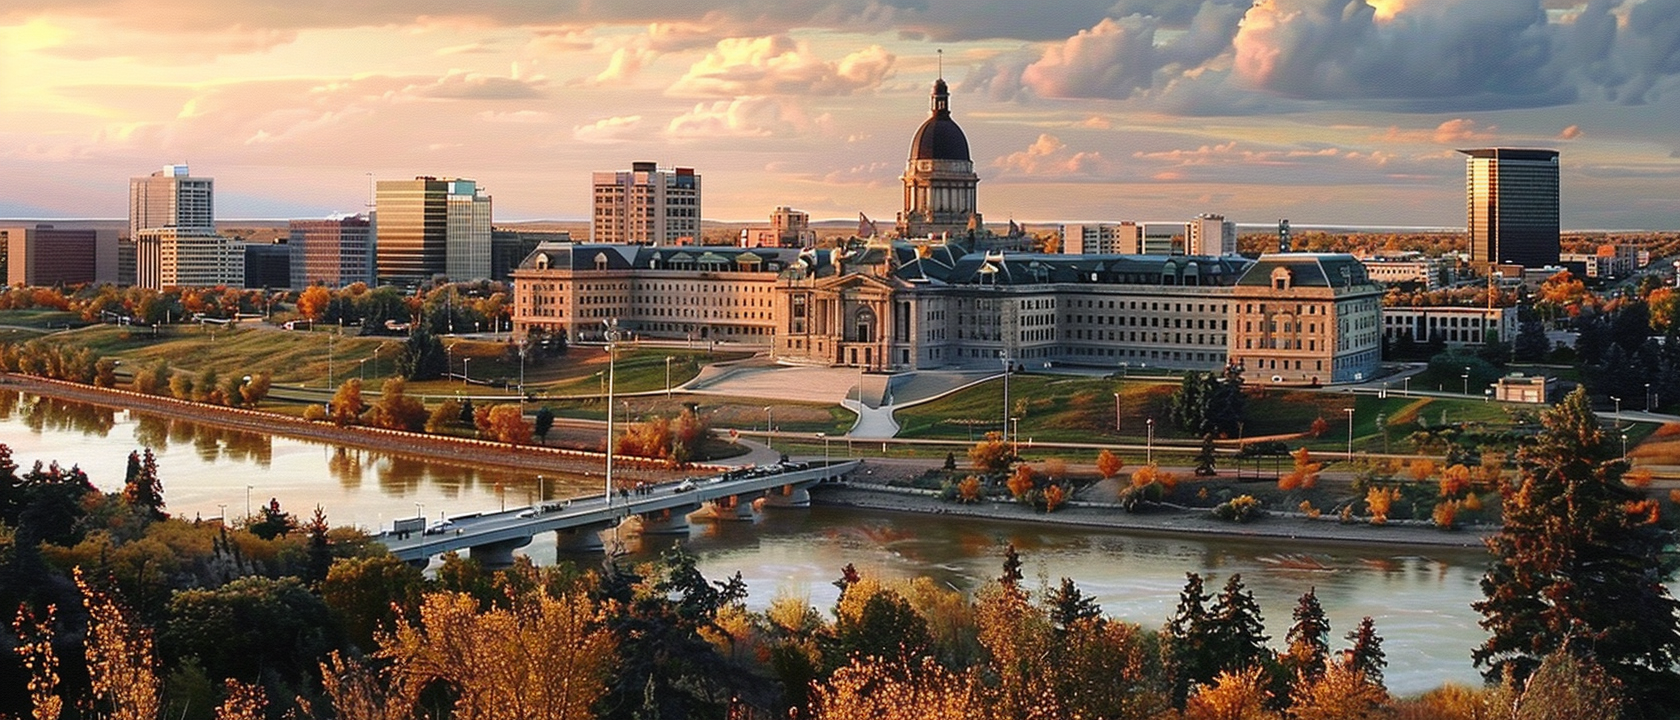 Saskatchewan Faces Audit by Canada Revenue Agency Over Unpaid Carbon Taxes